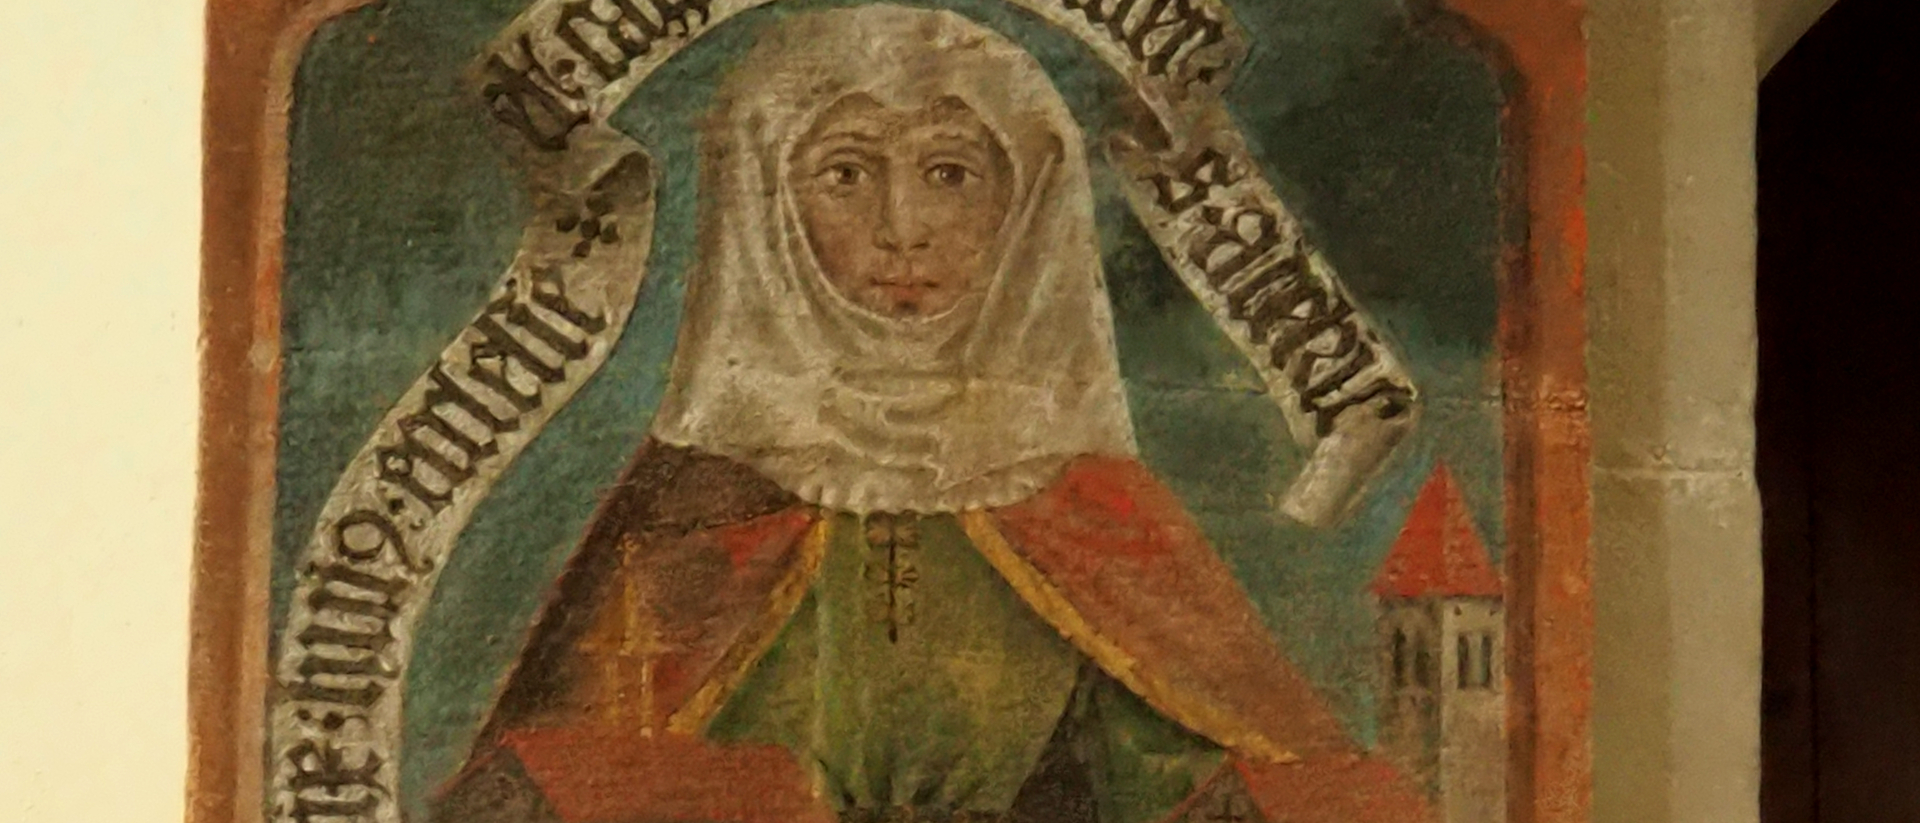 Reginlinde: Klosterstifterin und ehemalige Fraumünster-Äbtissin. Malerei in Kirche St. Peter und Paul auf der Insel Ufenau